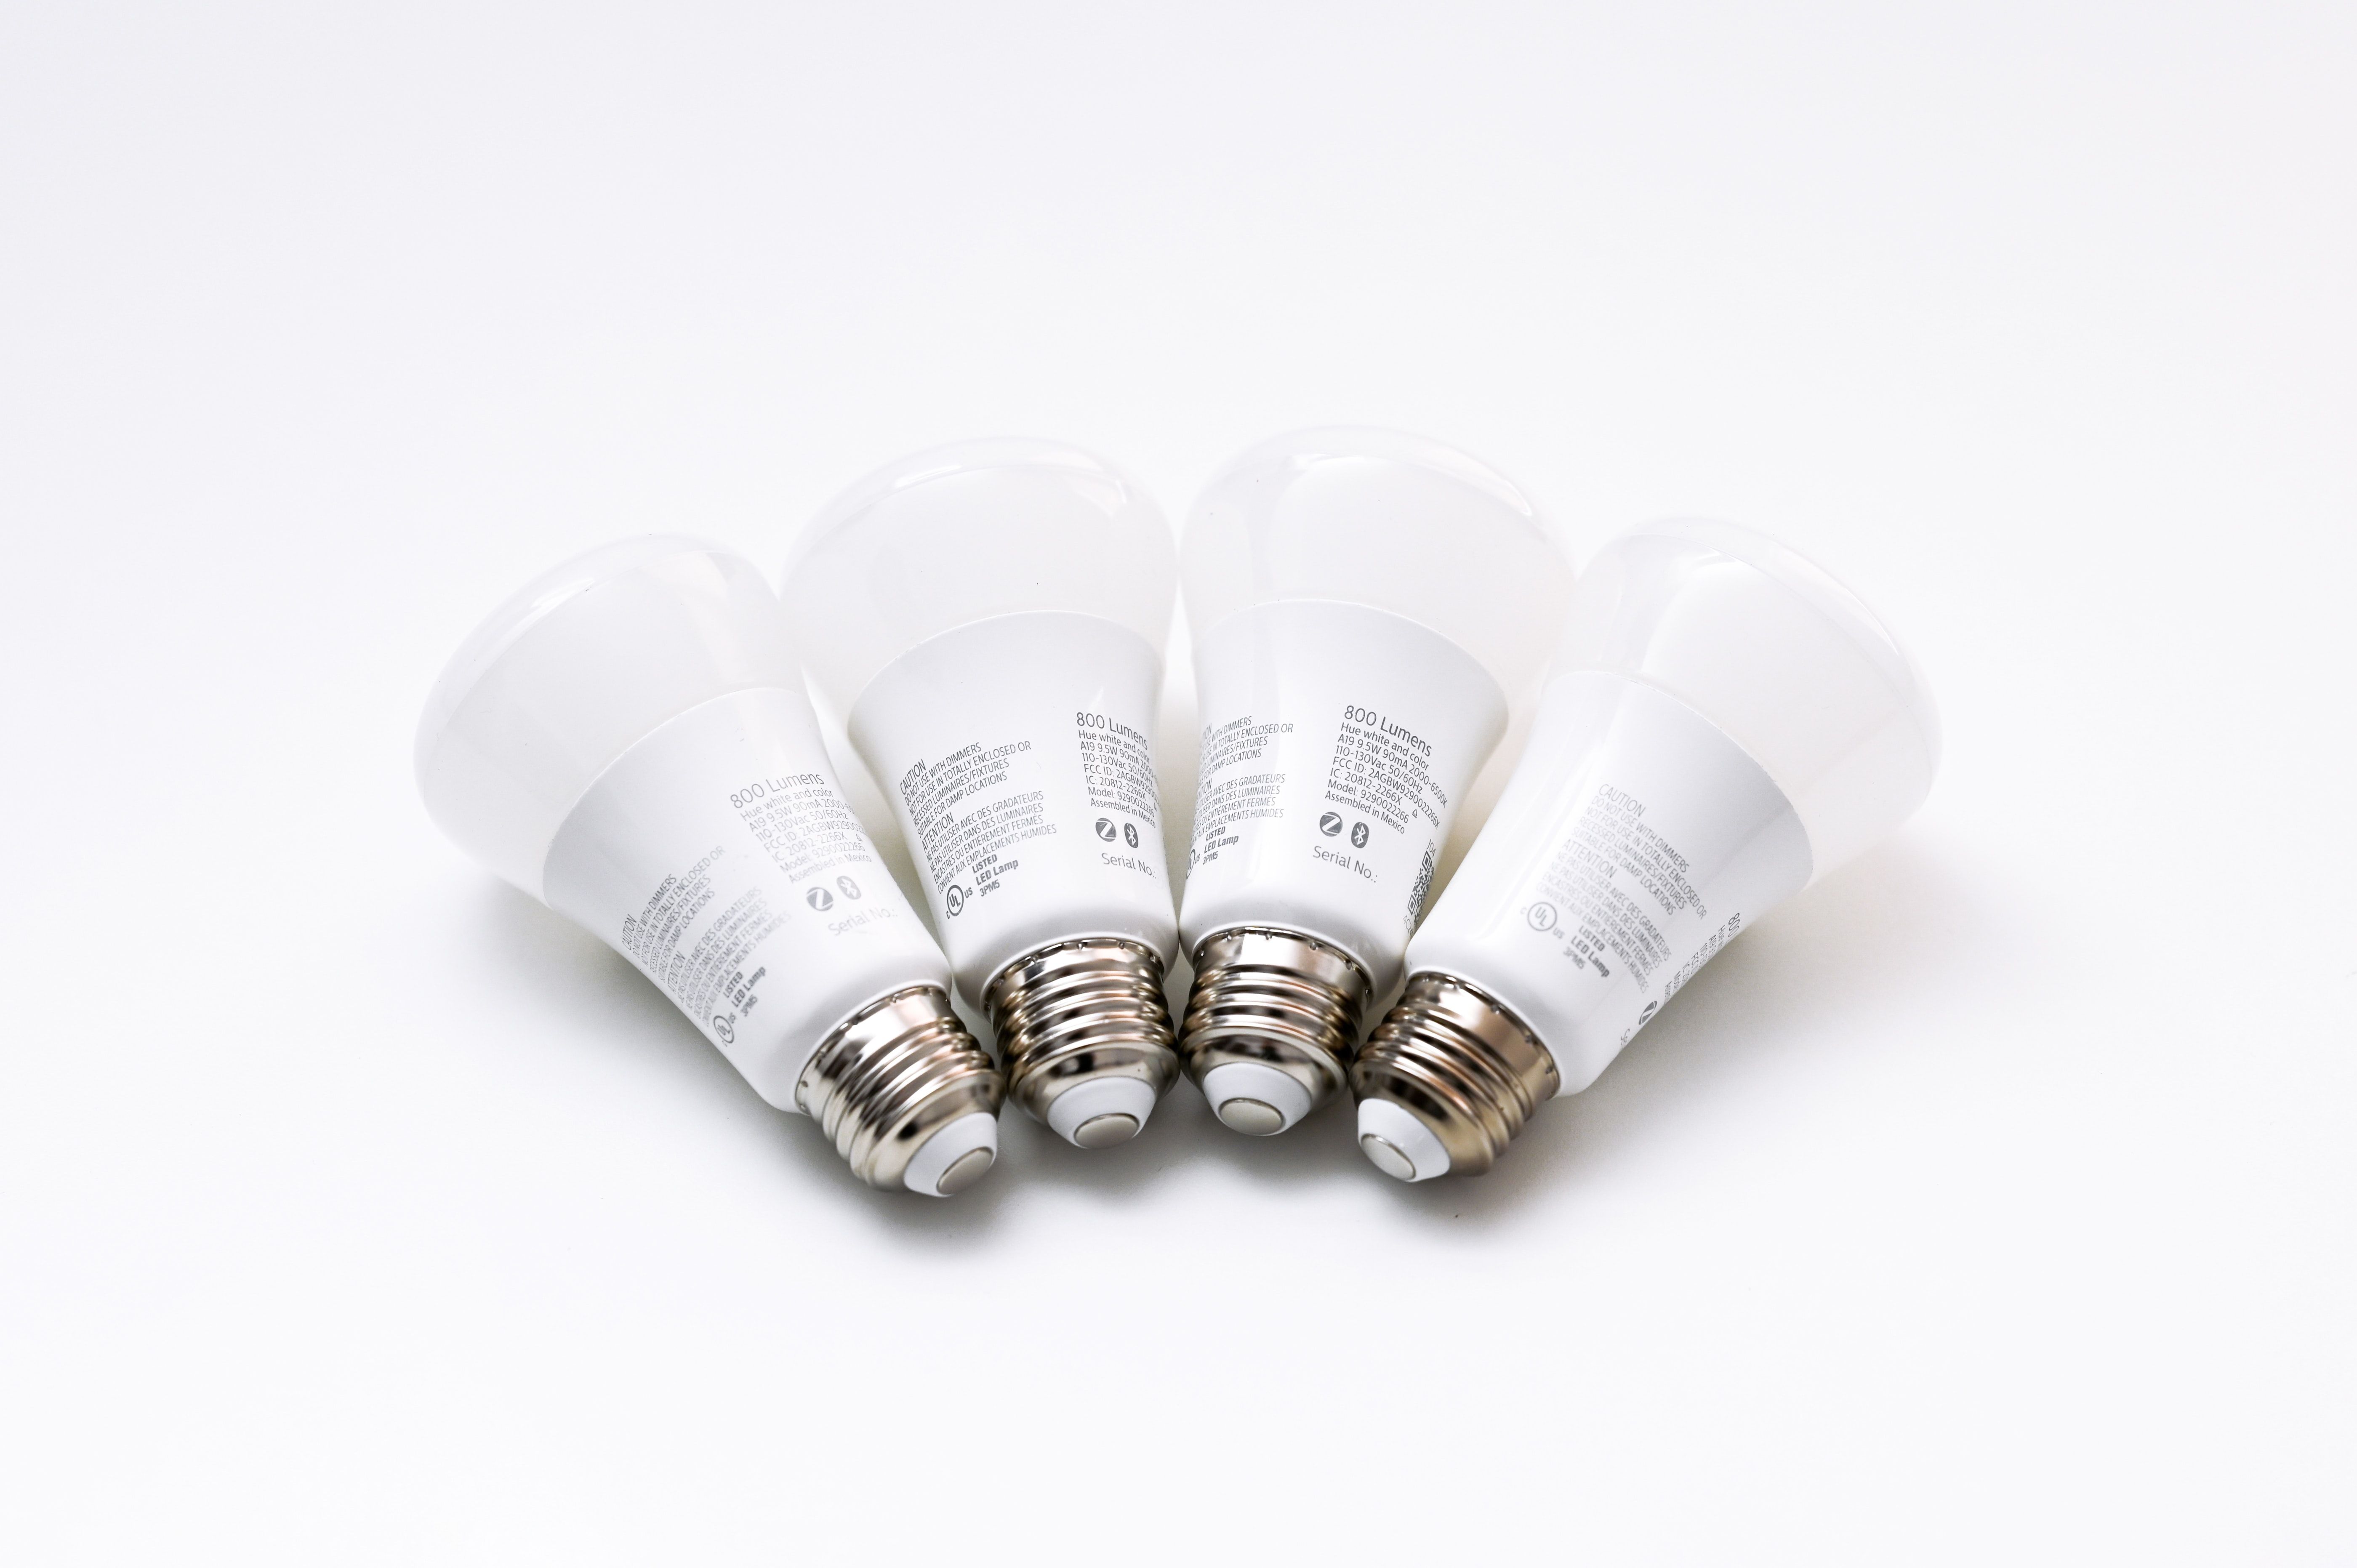 A bunch of smart lightbulbs.